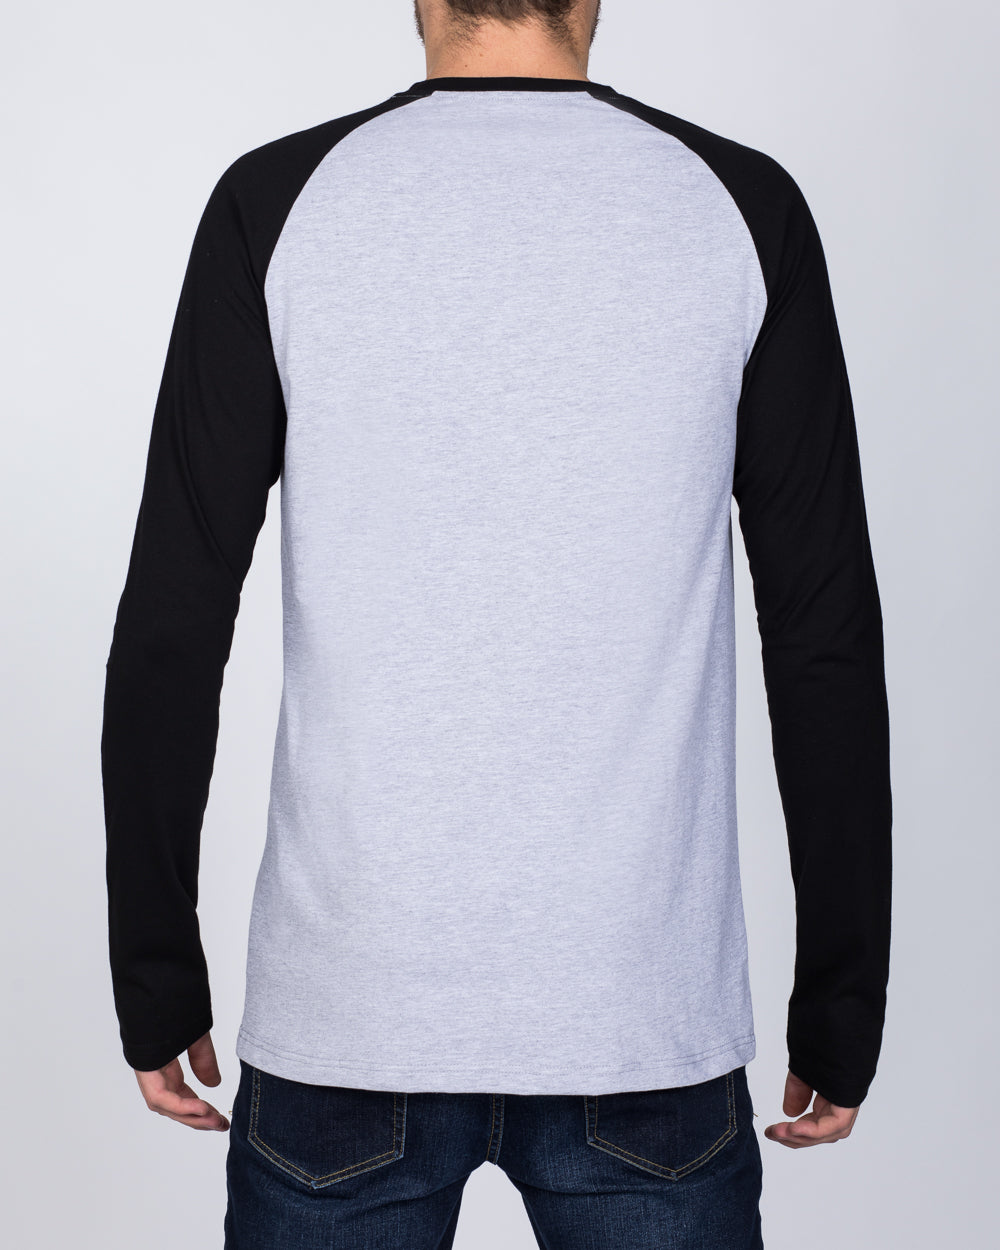 2t Raglan Long Sleeve Tall T-Shirt (grey/black)